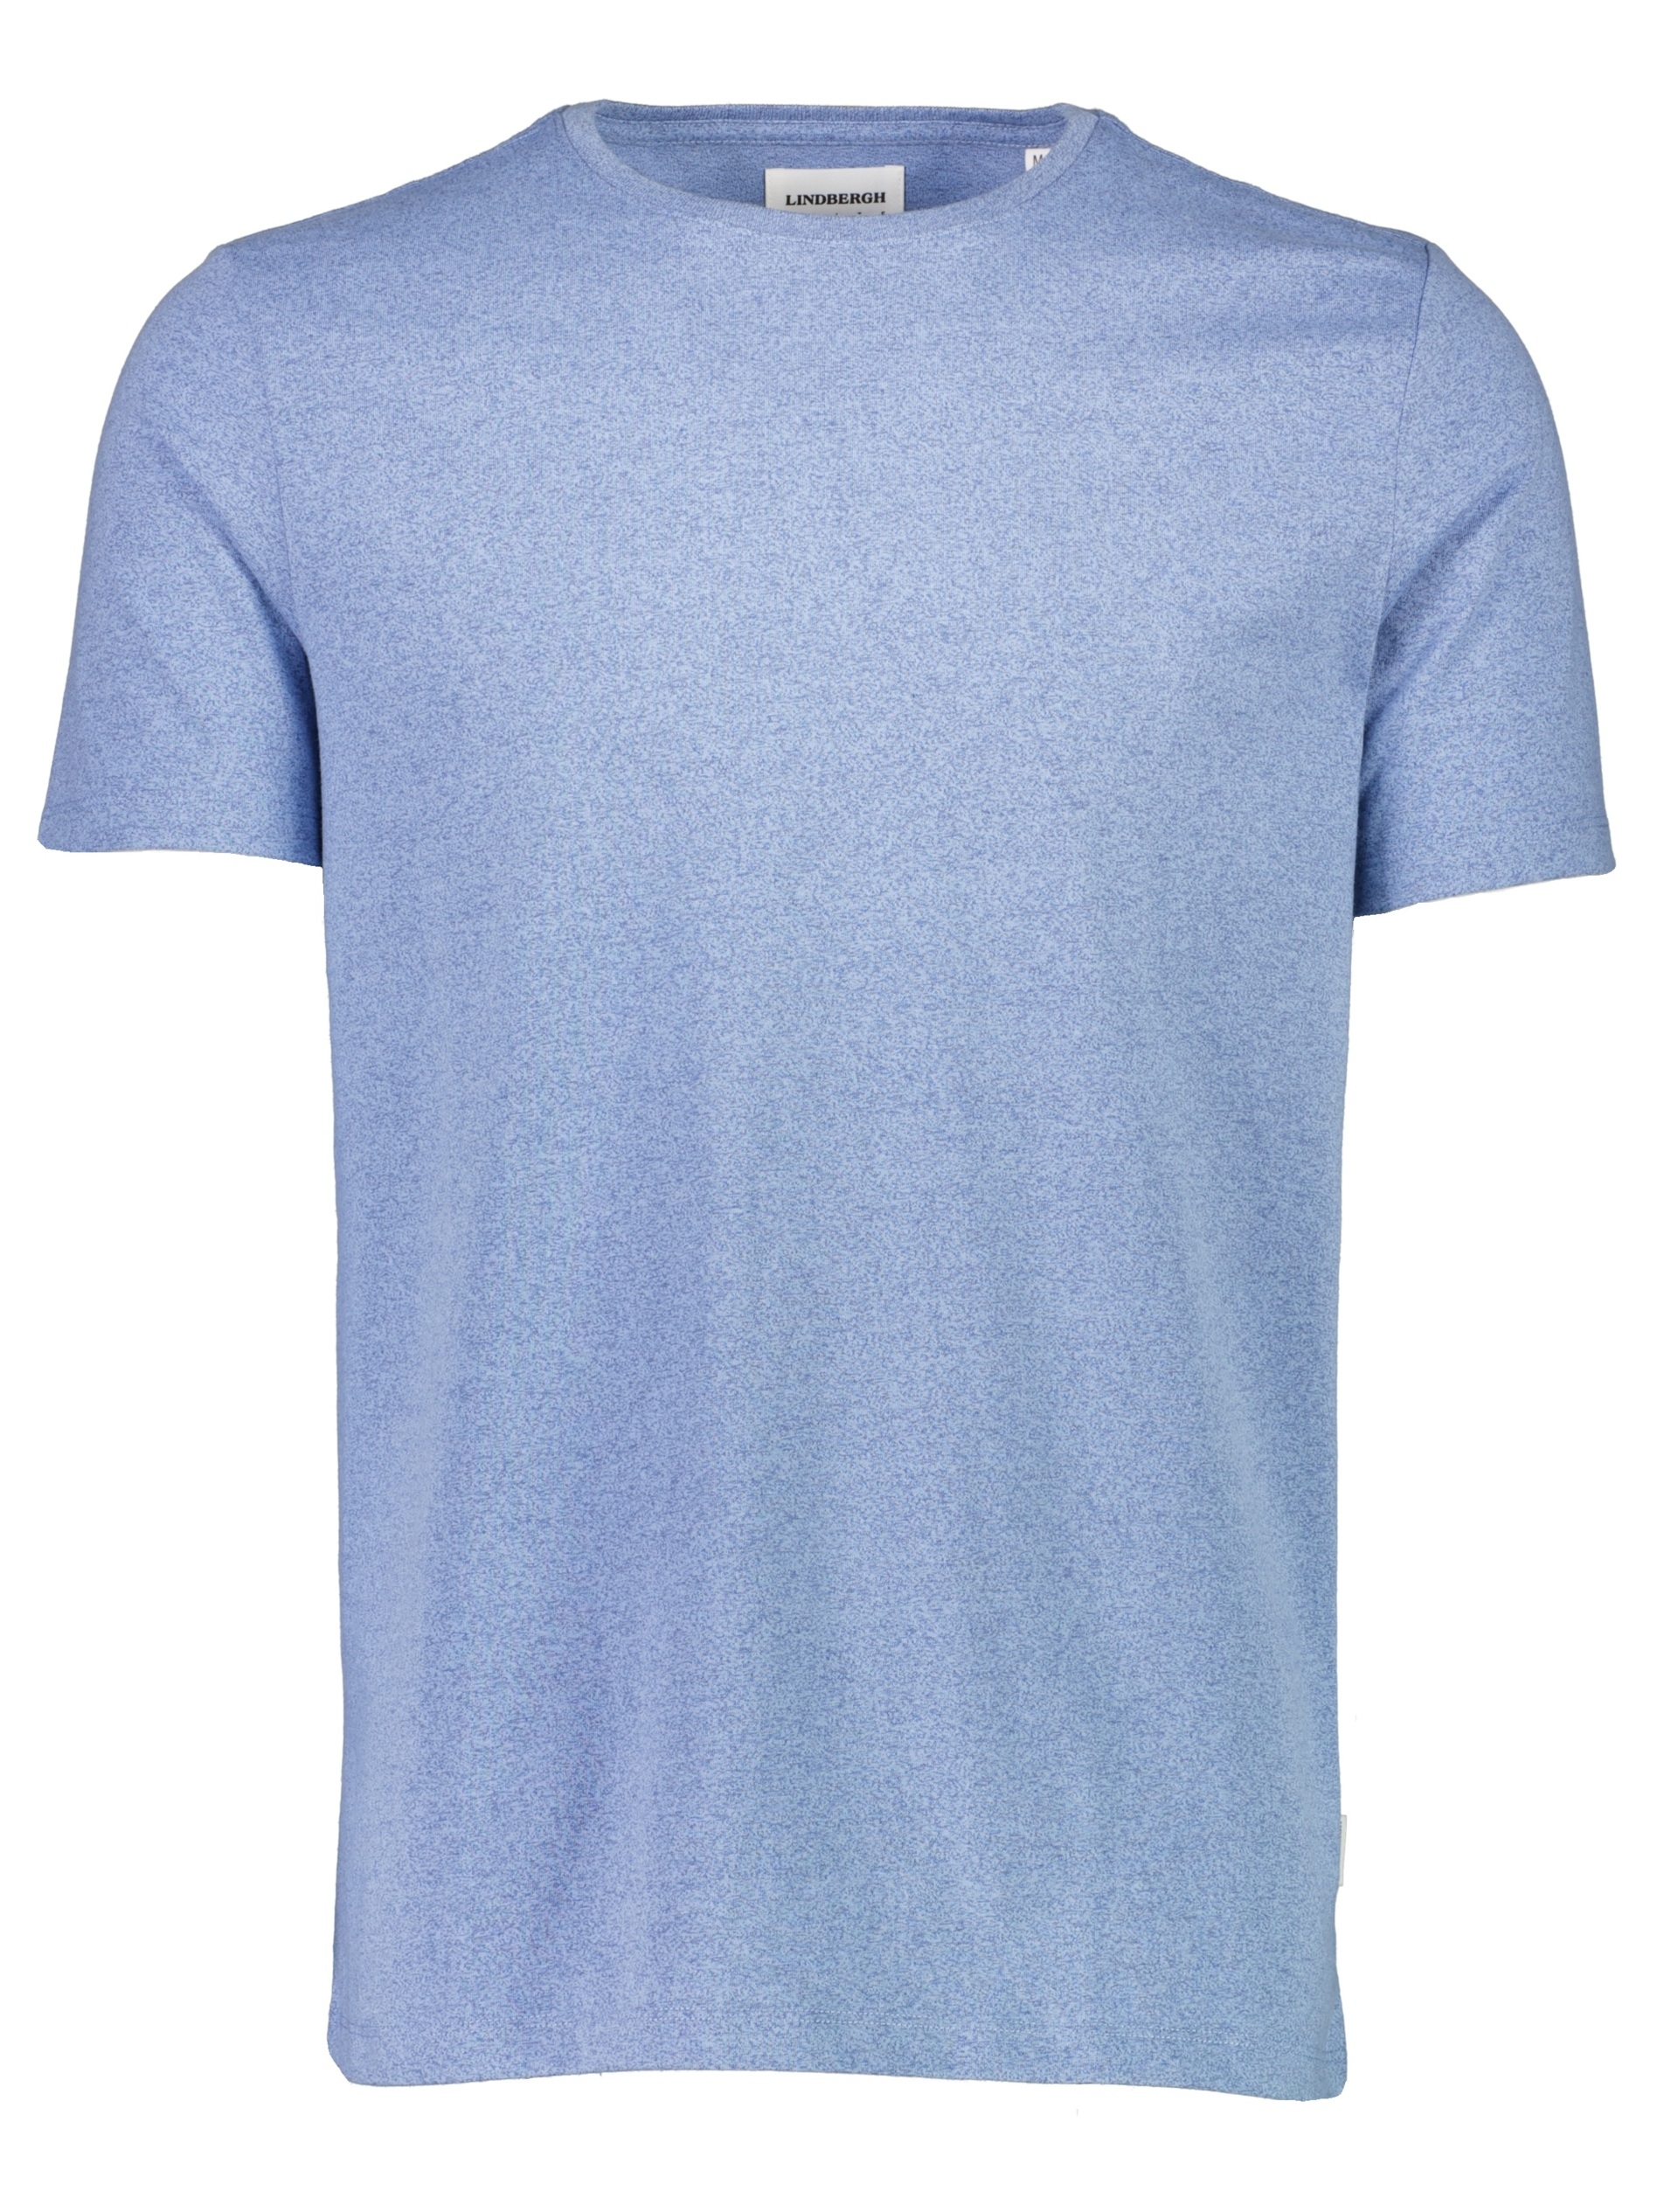 Lindbergh T-shirt blauw / new dk blue mix